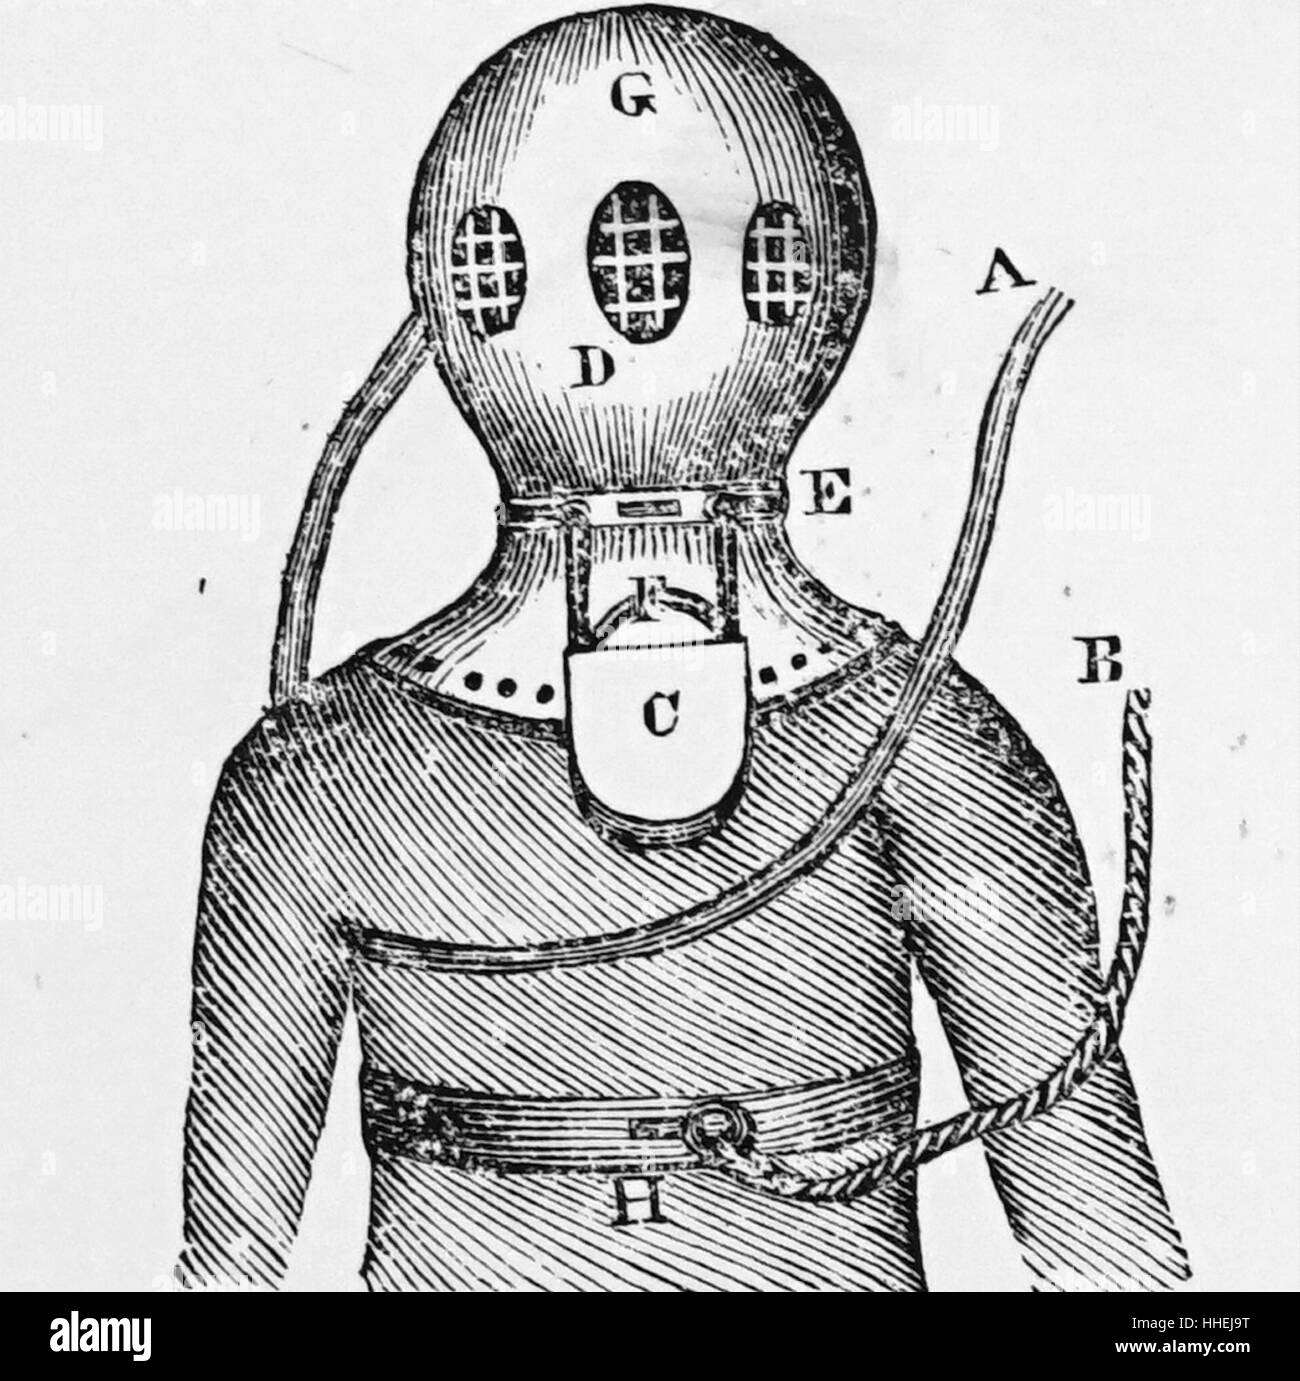 Abbildung des Dekans der Helm, erfunden von John Deane (1800-1884) Tauchen. Vom 19. Jahrhundert Stockfoto